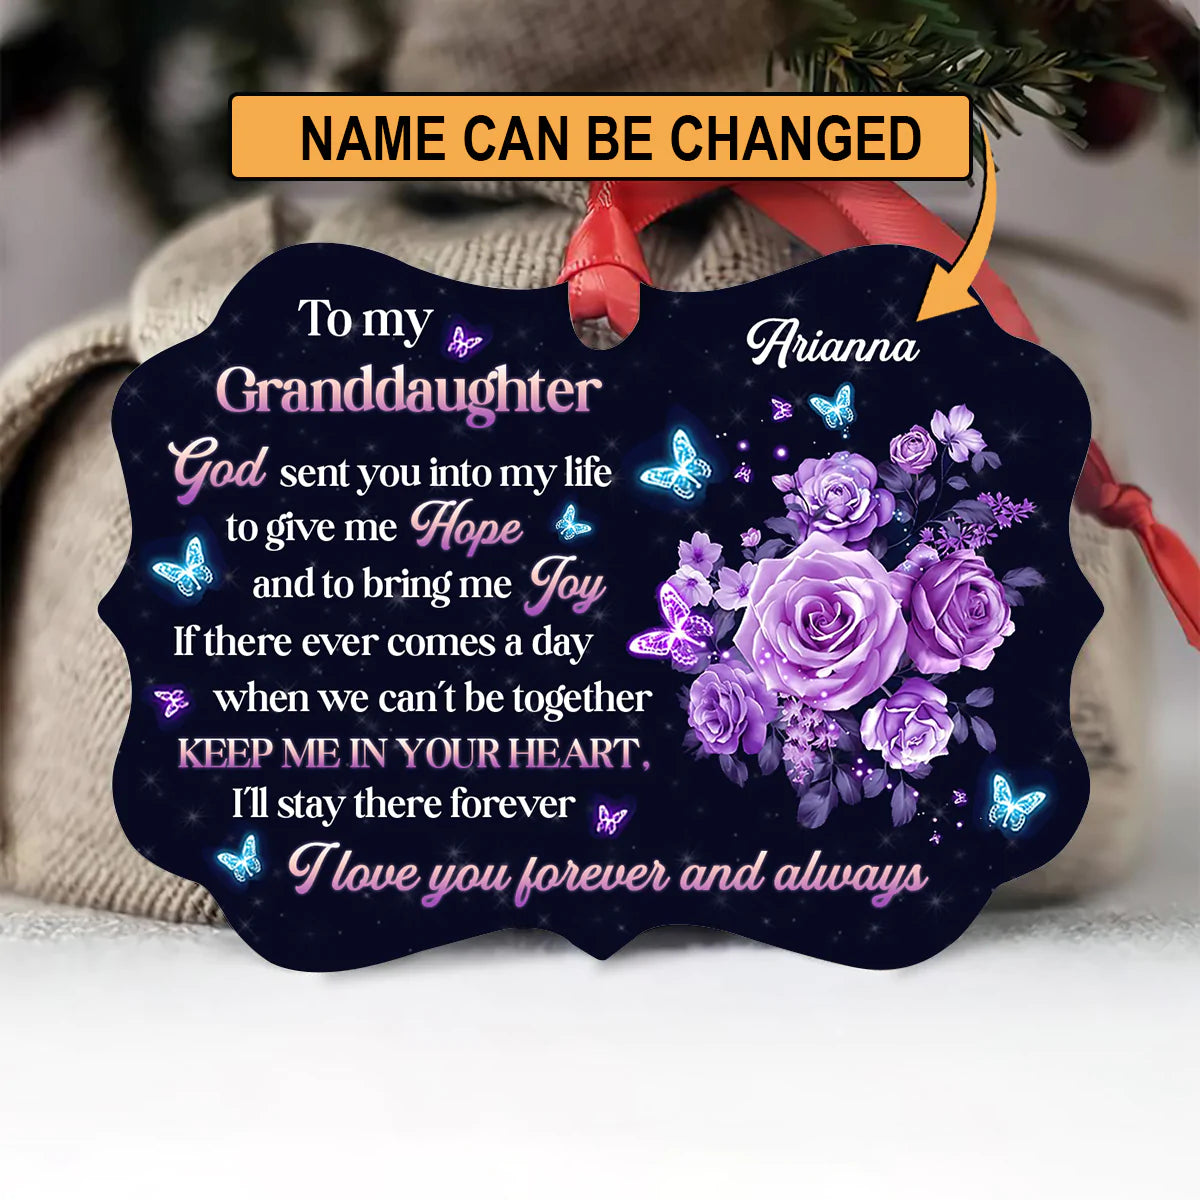 Personalized Gift For Granddaughter Aluminum Ornament, God, Butterfly, Roses Aluminium Ornament - Custom Gift For Christian, Family, Granddaughter